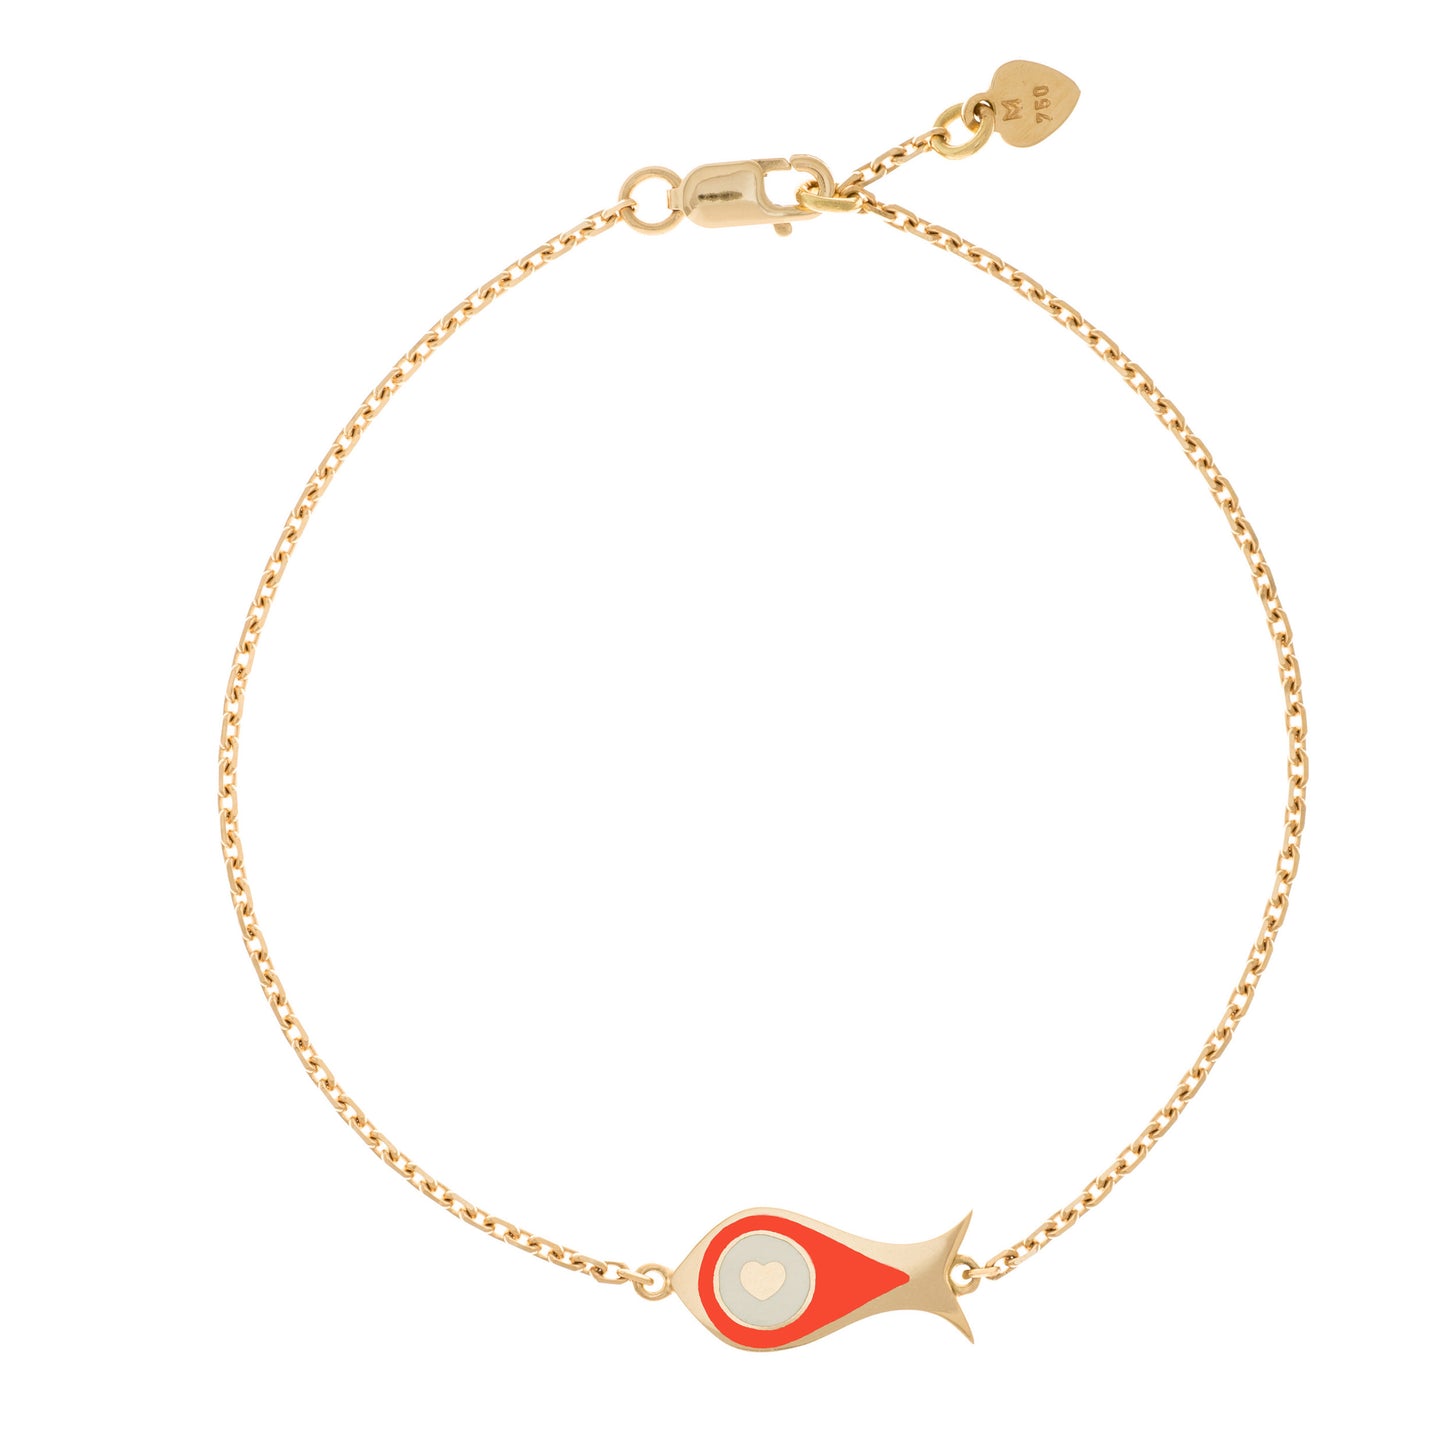 MORA bijoux, bracelet Poisson-coeur lchthys émaillé orange d'un diamètre de 15mm en or jaune 18 carats. Longueur de la chaîne 16cm avec un petit coeur en or jaune 18 carats soudé sur le fermoir.